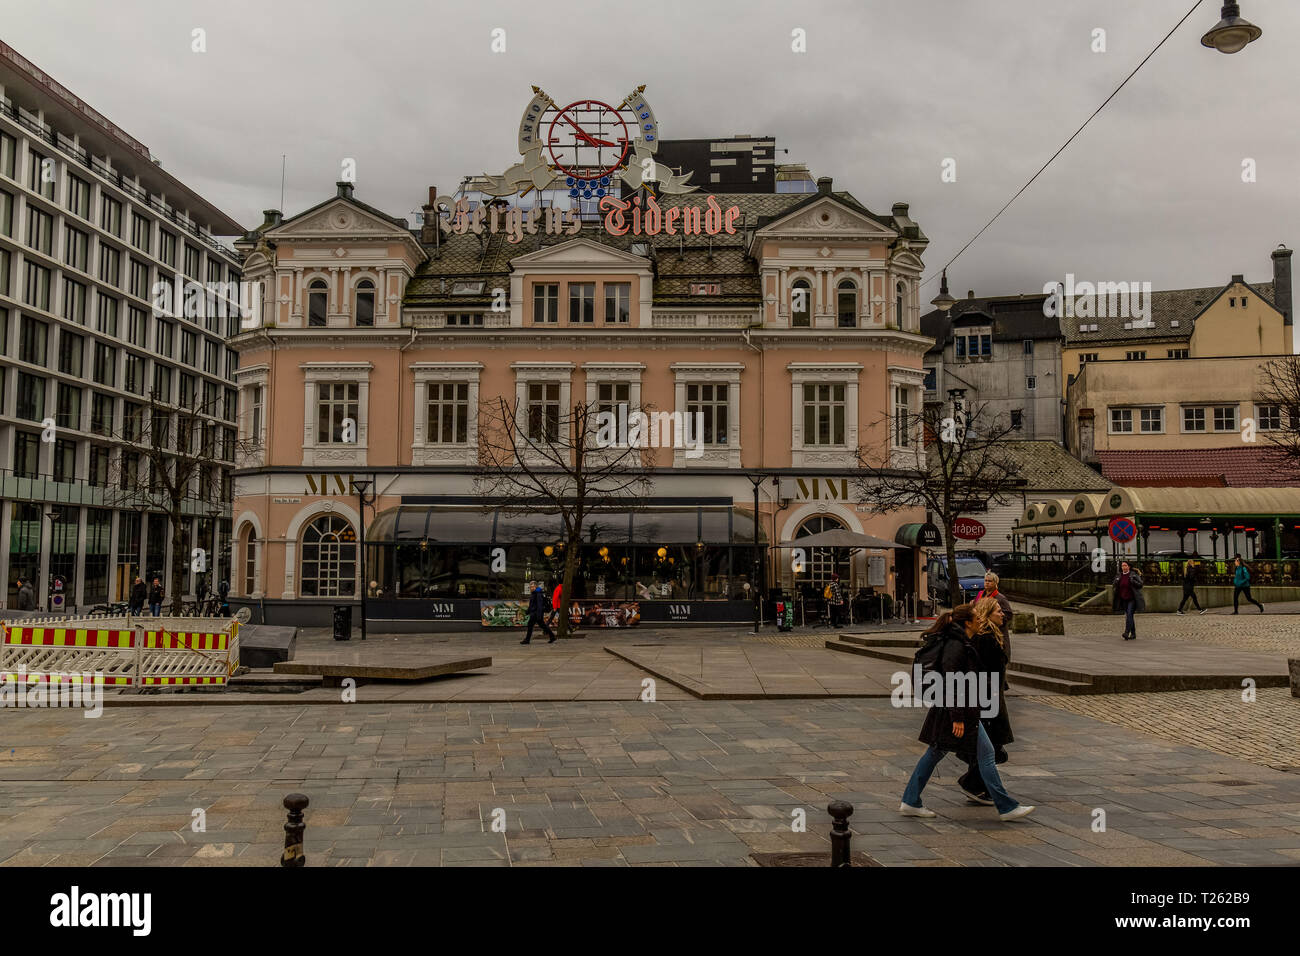 Bergen, ferroviaria o ferrovia, stazione in Norvegia, con il famoso orologio sul tetto. Foto Stock